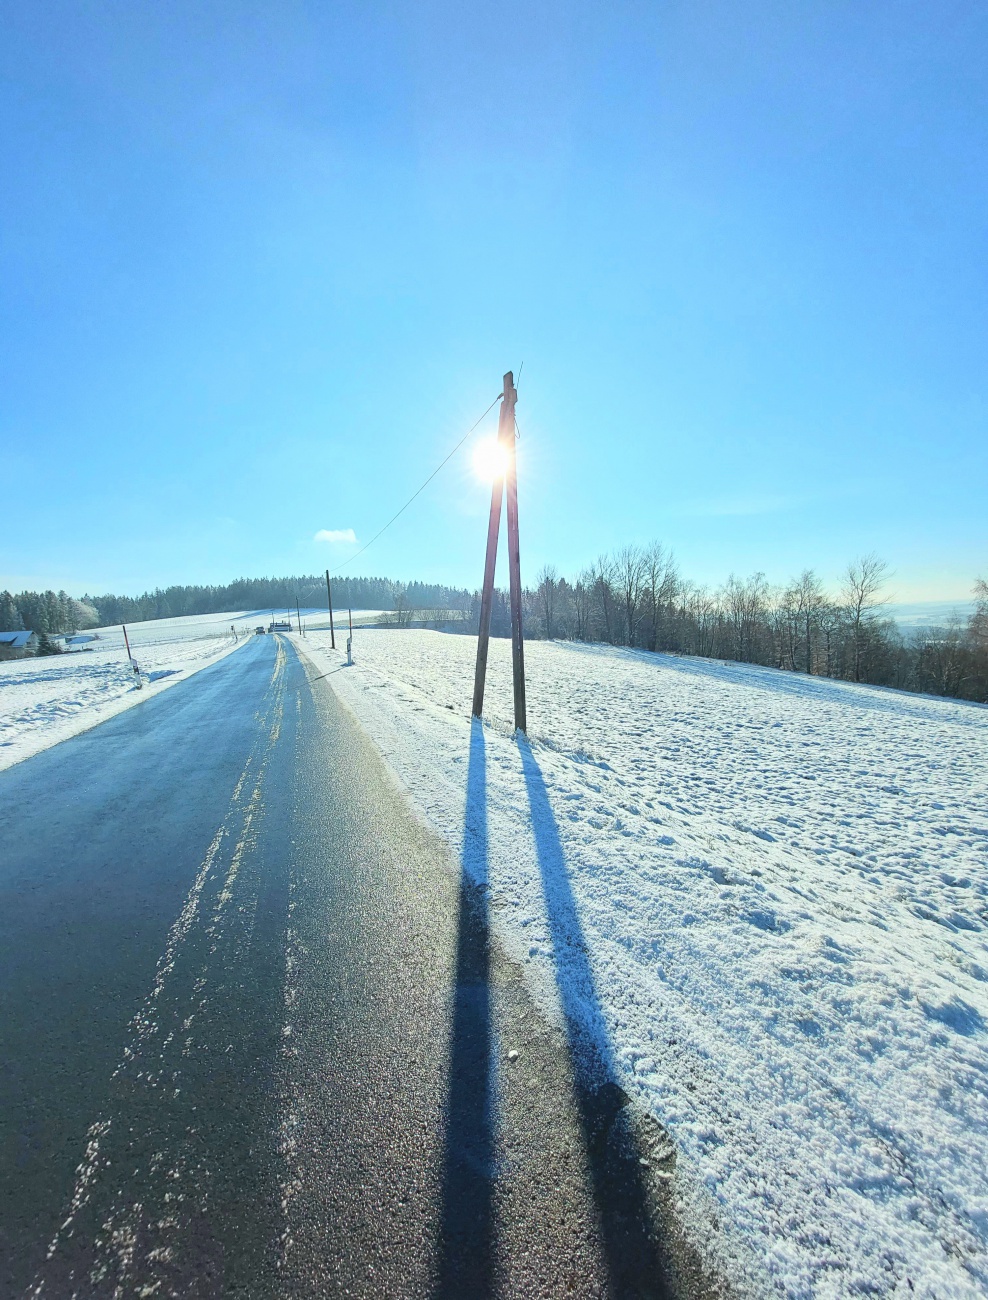 Foto: Martin Zehrer - Unbeschreiblich...<br />
<br />
Endlich wieder ein herrlich sonniger Winter-Tag. <br />
Bei -5 Grad Kälte strahlte die Sonne wirklich voller Energie vom blauen Himmel. 